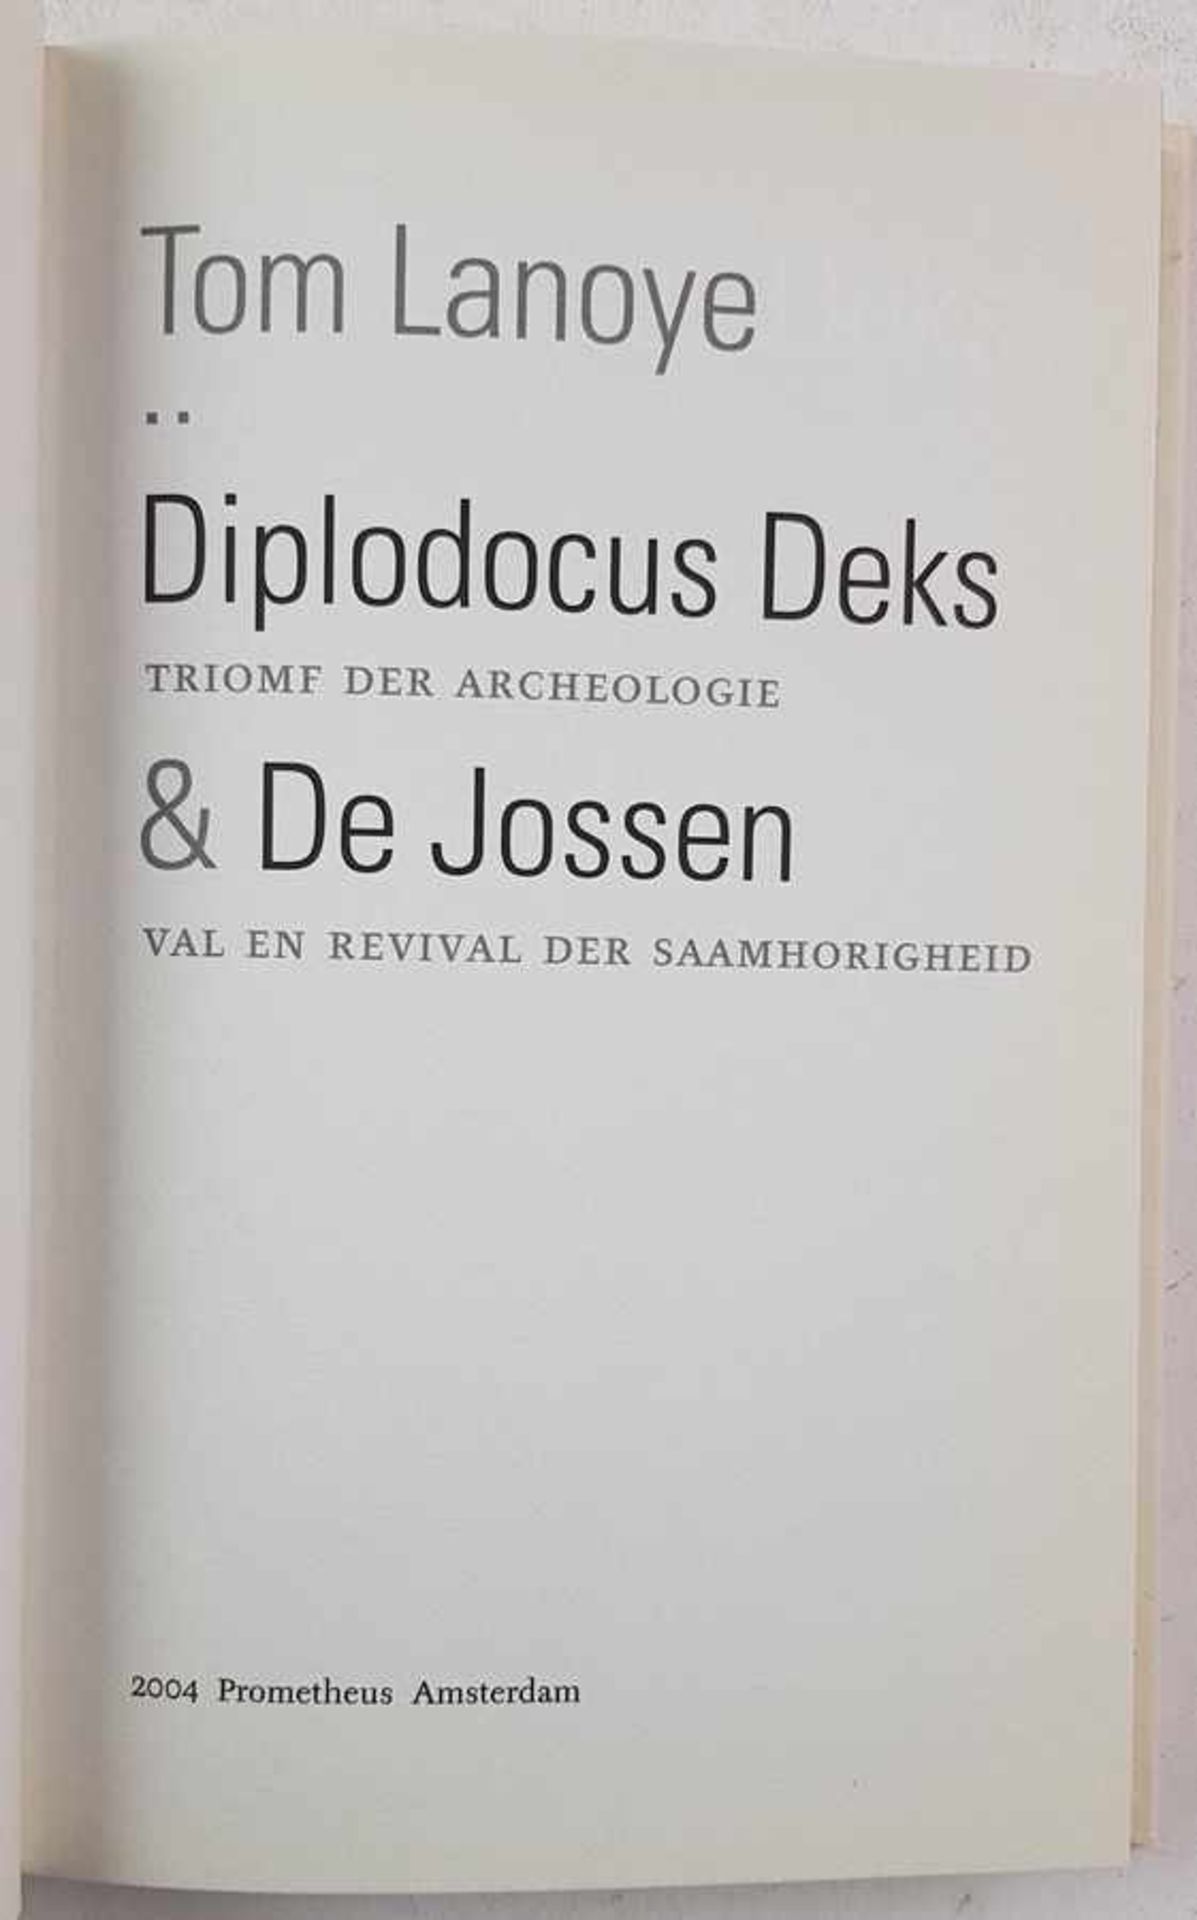 (Boeken) (Literatuur) Een lot met Vlaamse auteursEen uitgebreid lot met literaire werken van Vlaamse - Bild 3 aus 5